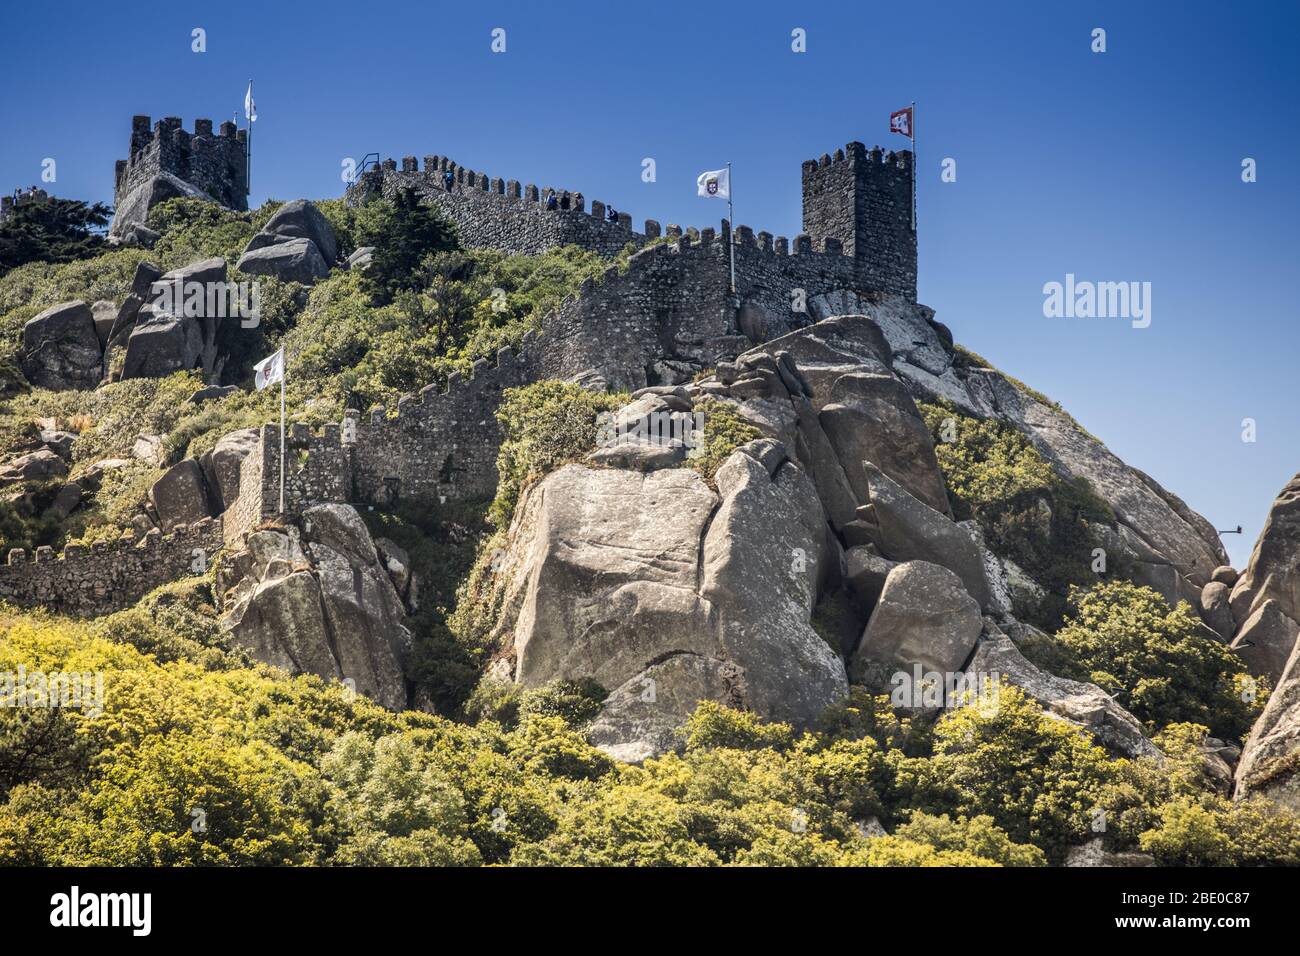 Château portugais au sommet d'une colline à Sintra. Le château a été construit par les Maures au Xe siècle après leur conquête réussie du Portugal et de l'Espagne Banque D'Images